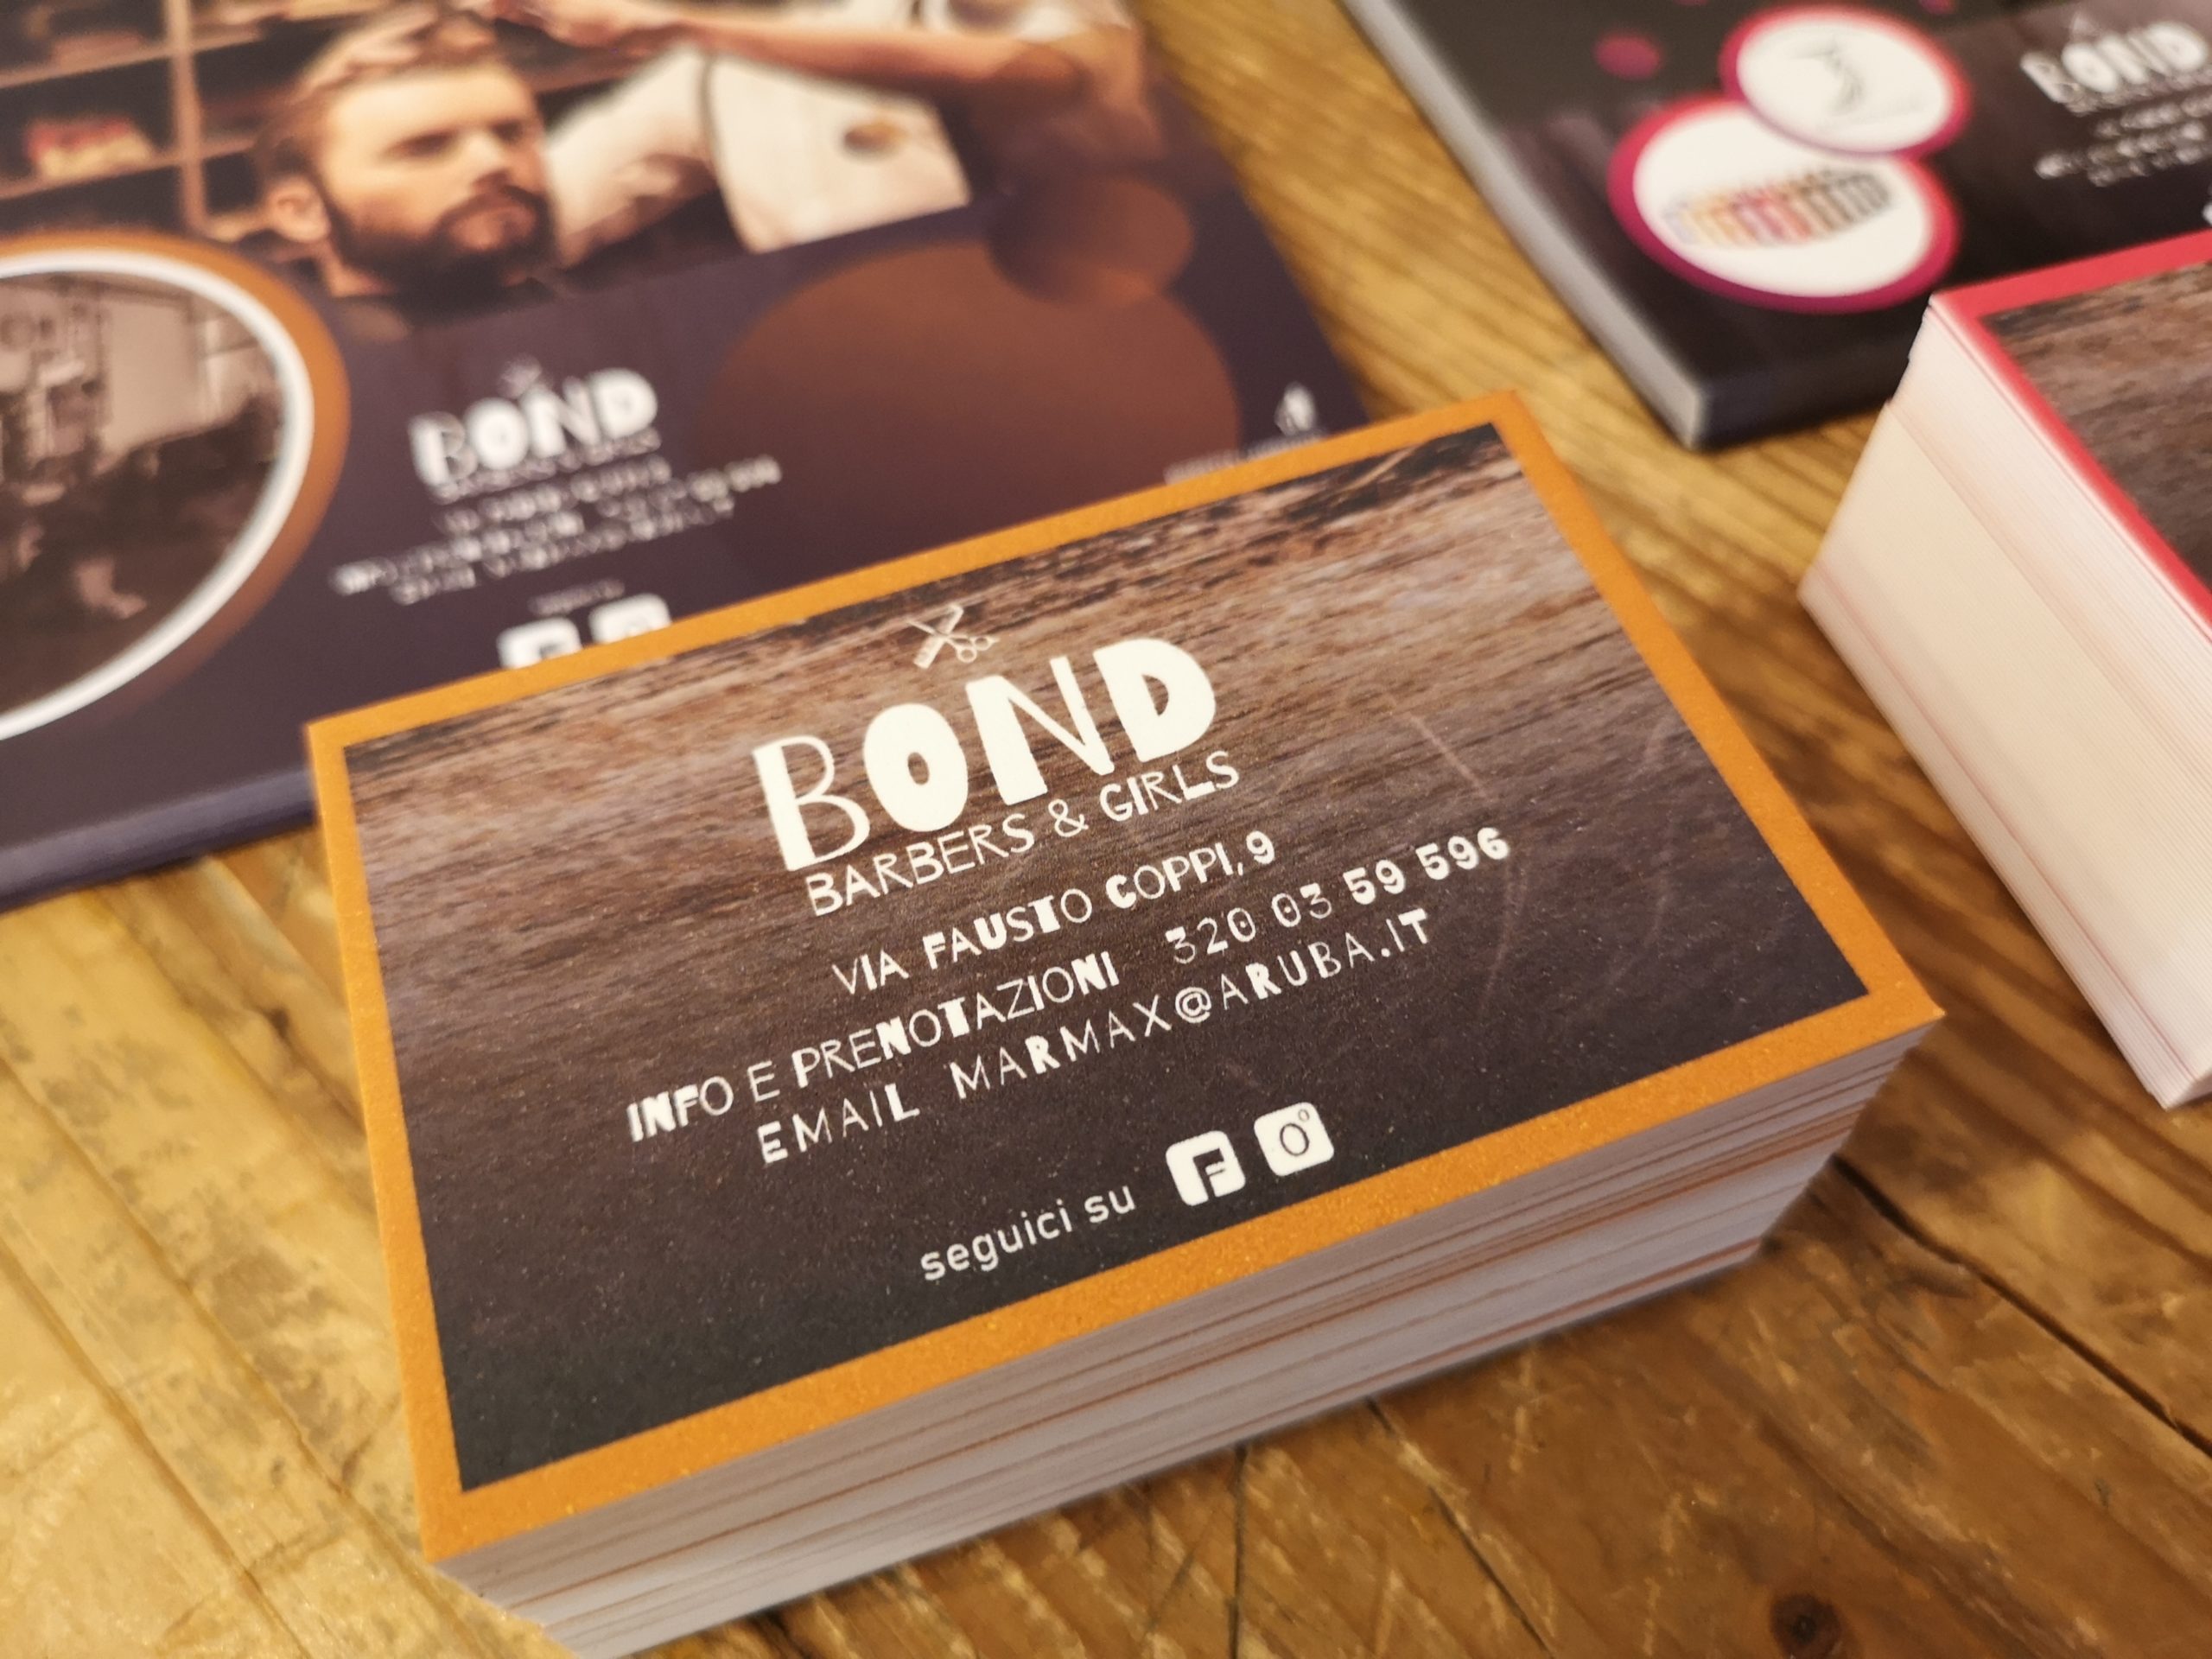 Bond - Barbers & Girls promo 2019 | MASTROiNCHIOSTRO